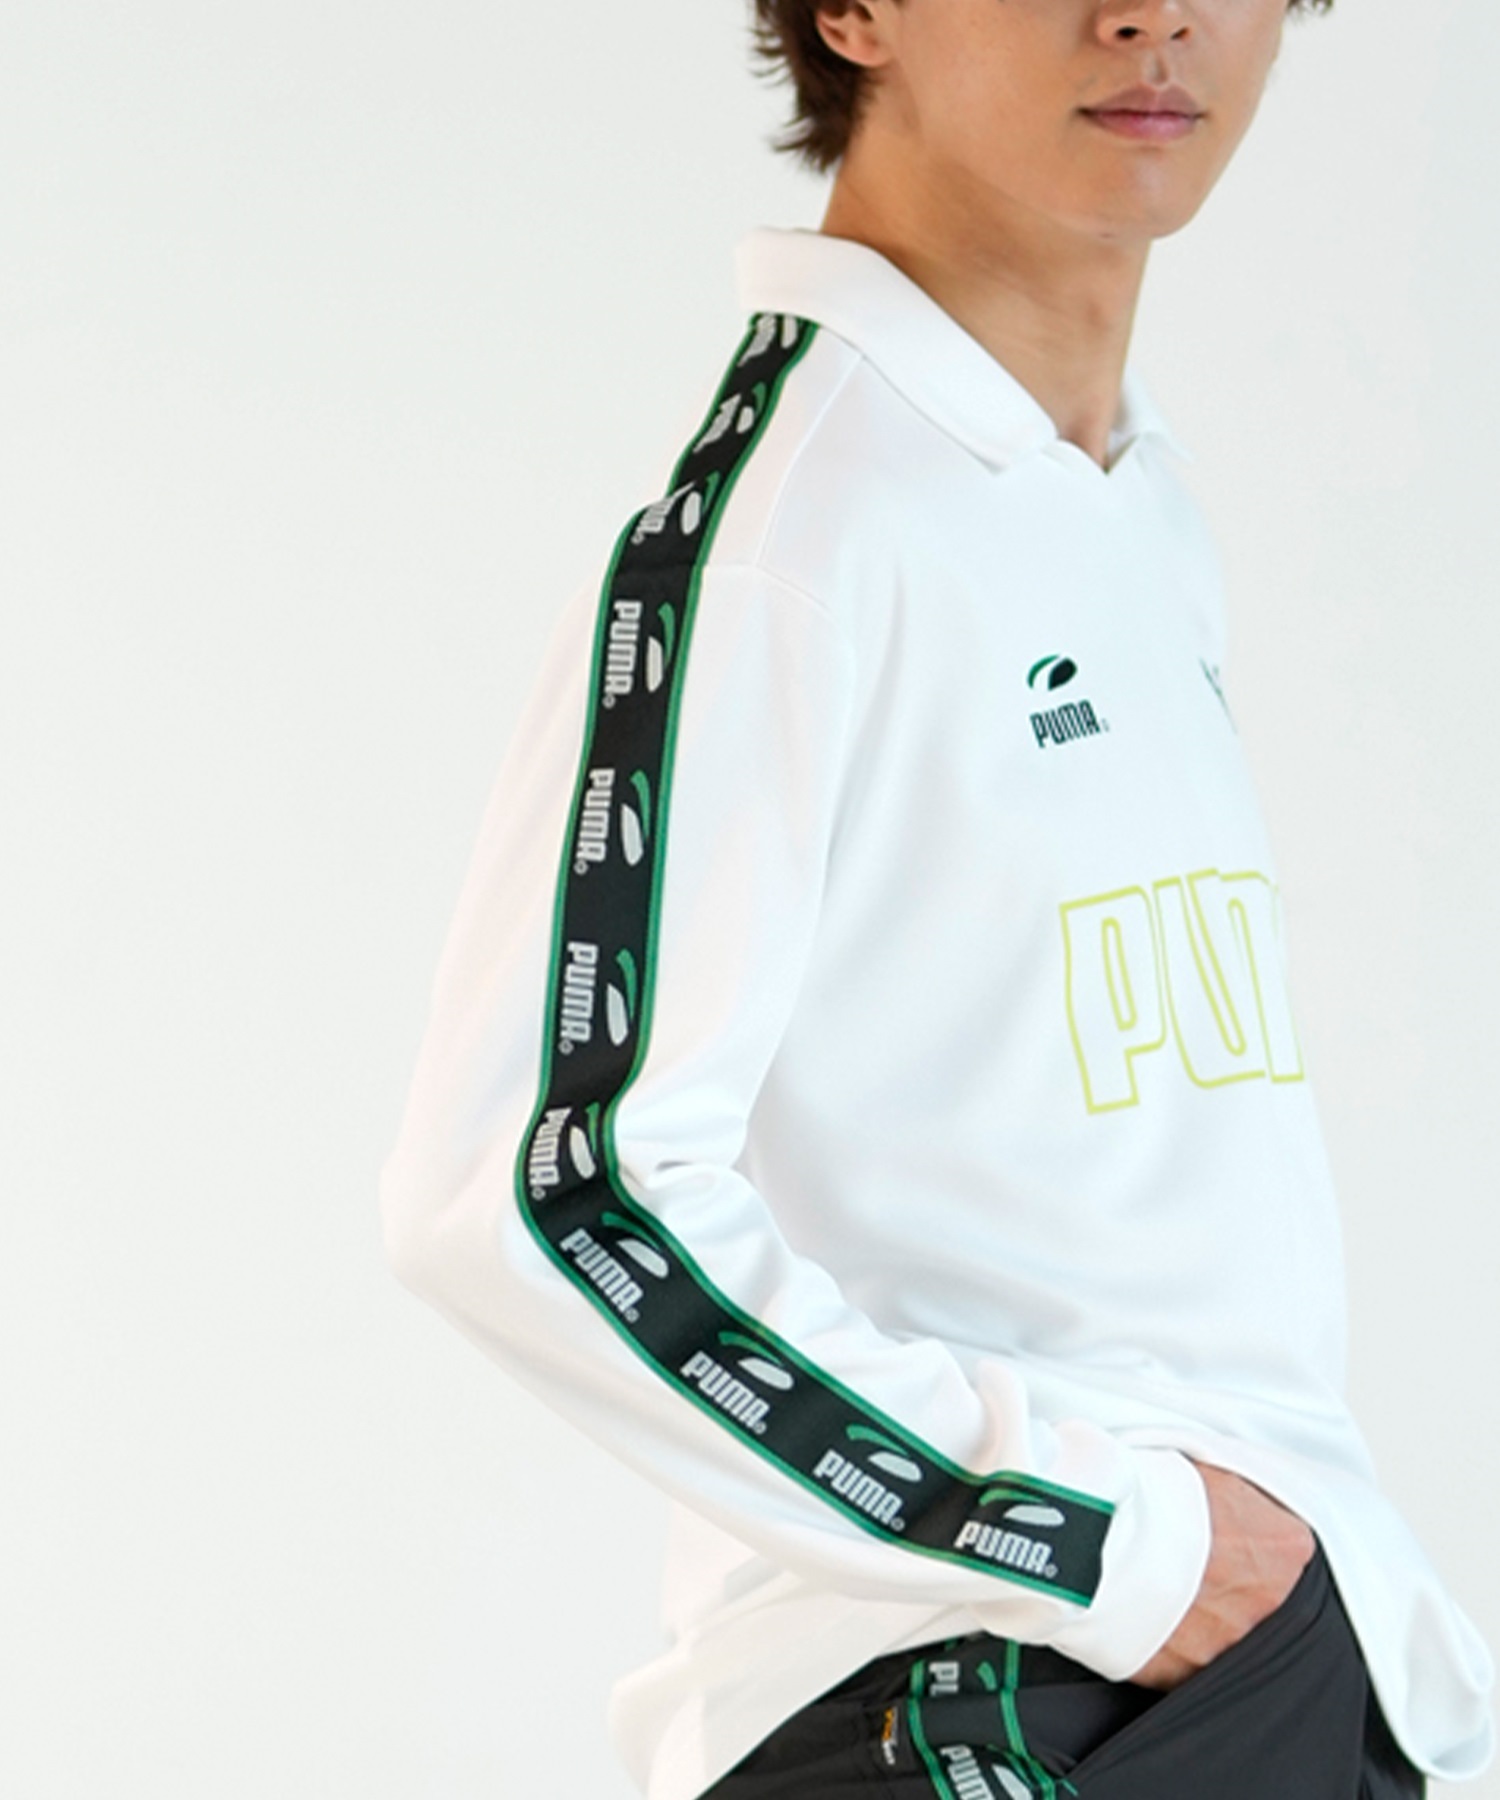 PUMA SKATEBOARDING プーマ スケートボーディング ゲームシャツ メンズ 長袖 Tシャツ ルーズシルエット 625691(02-M)